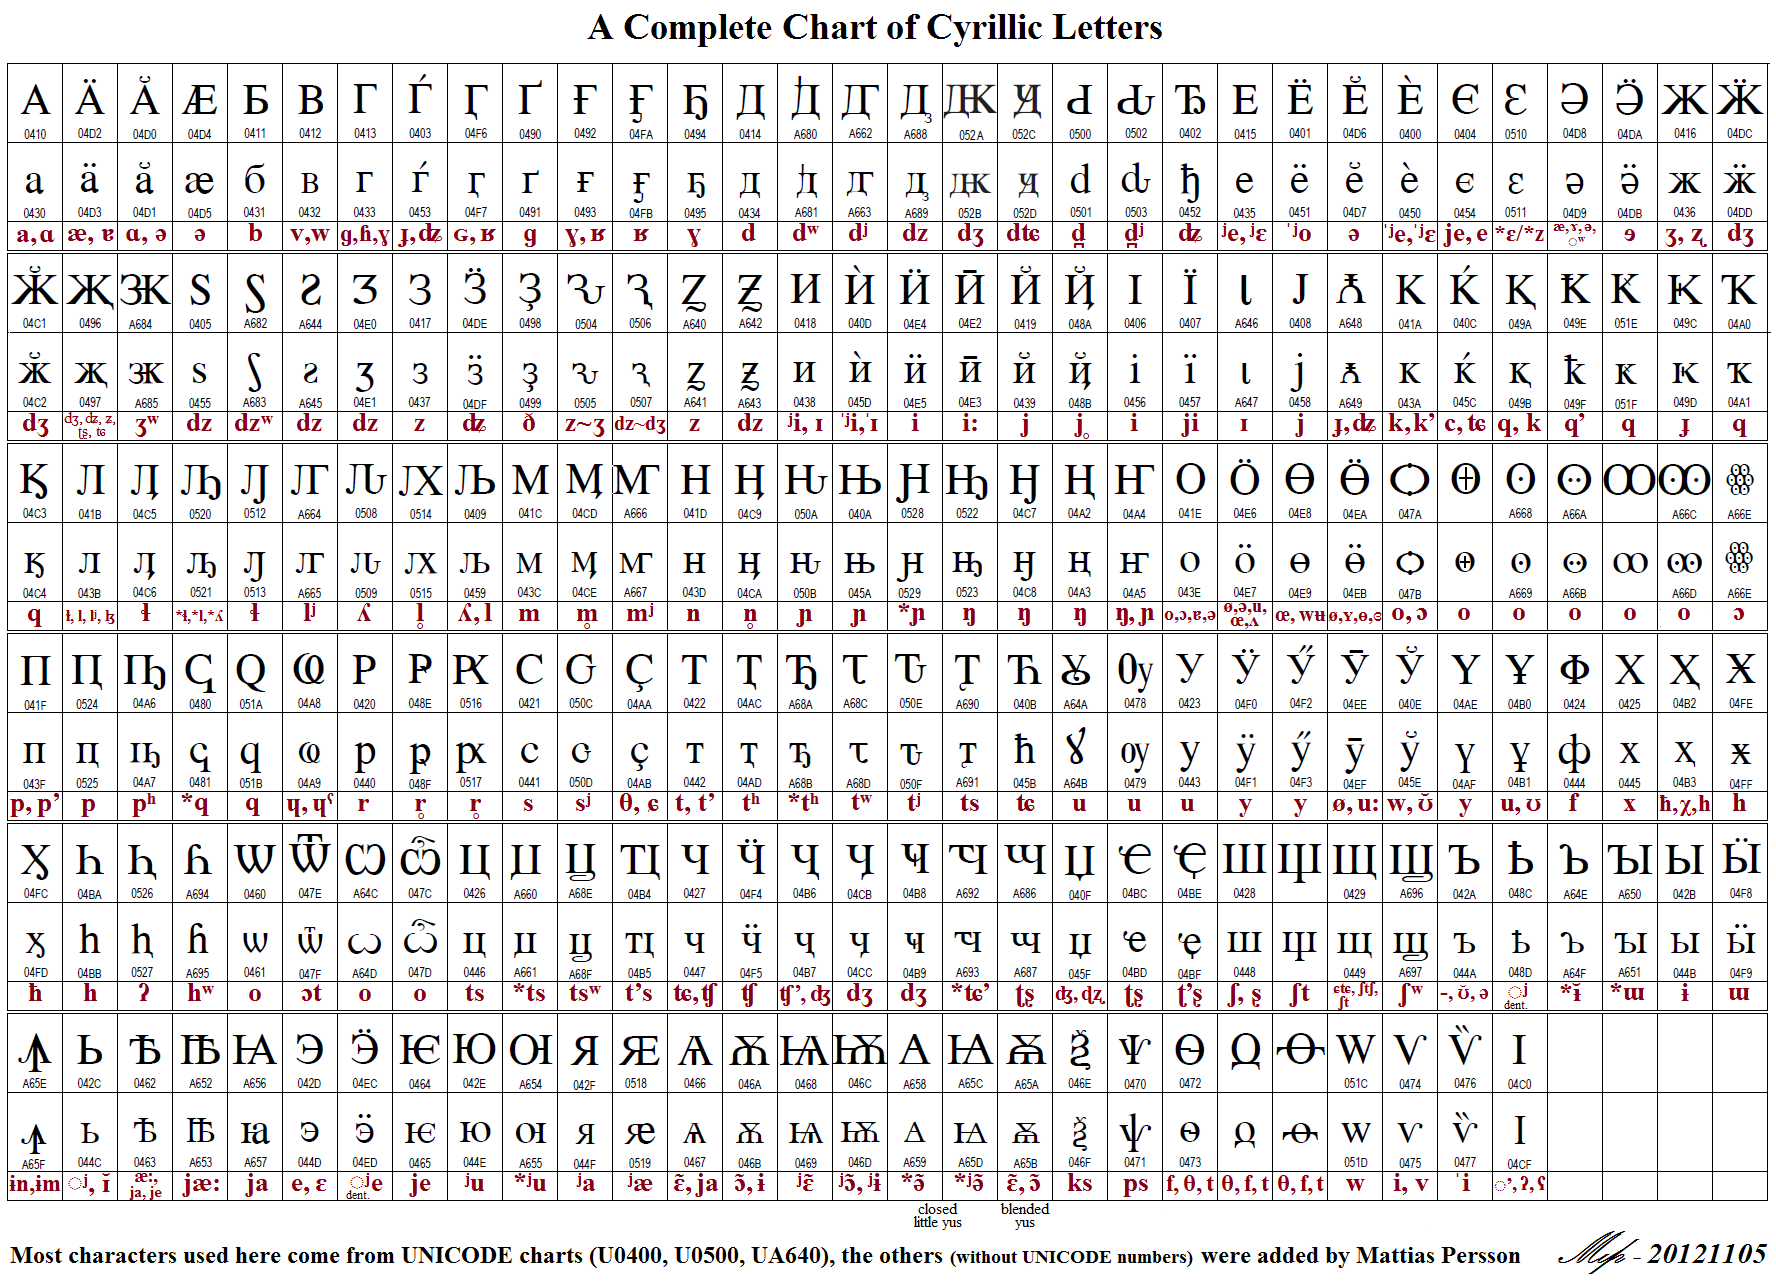 Unicode Chart